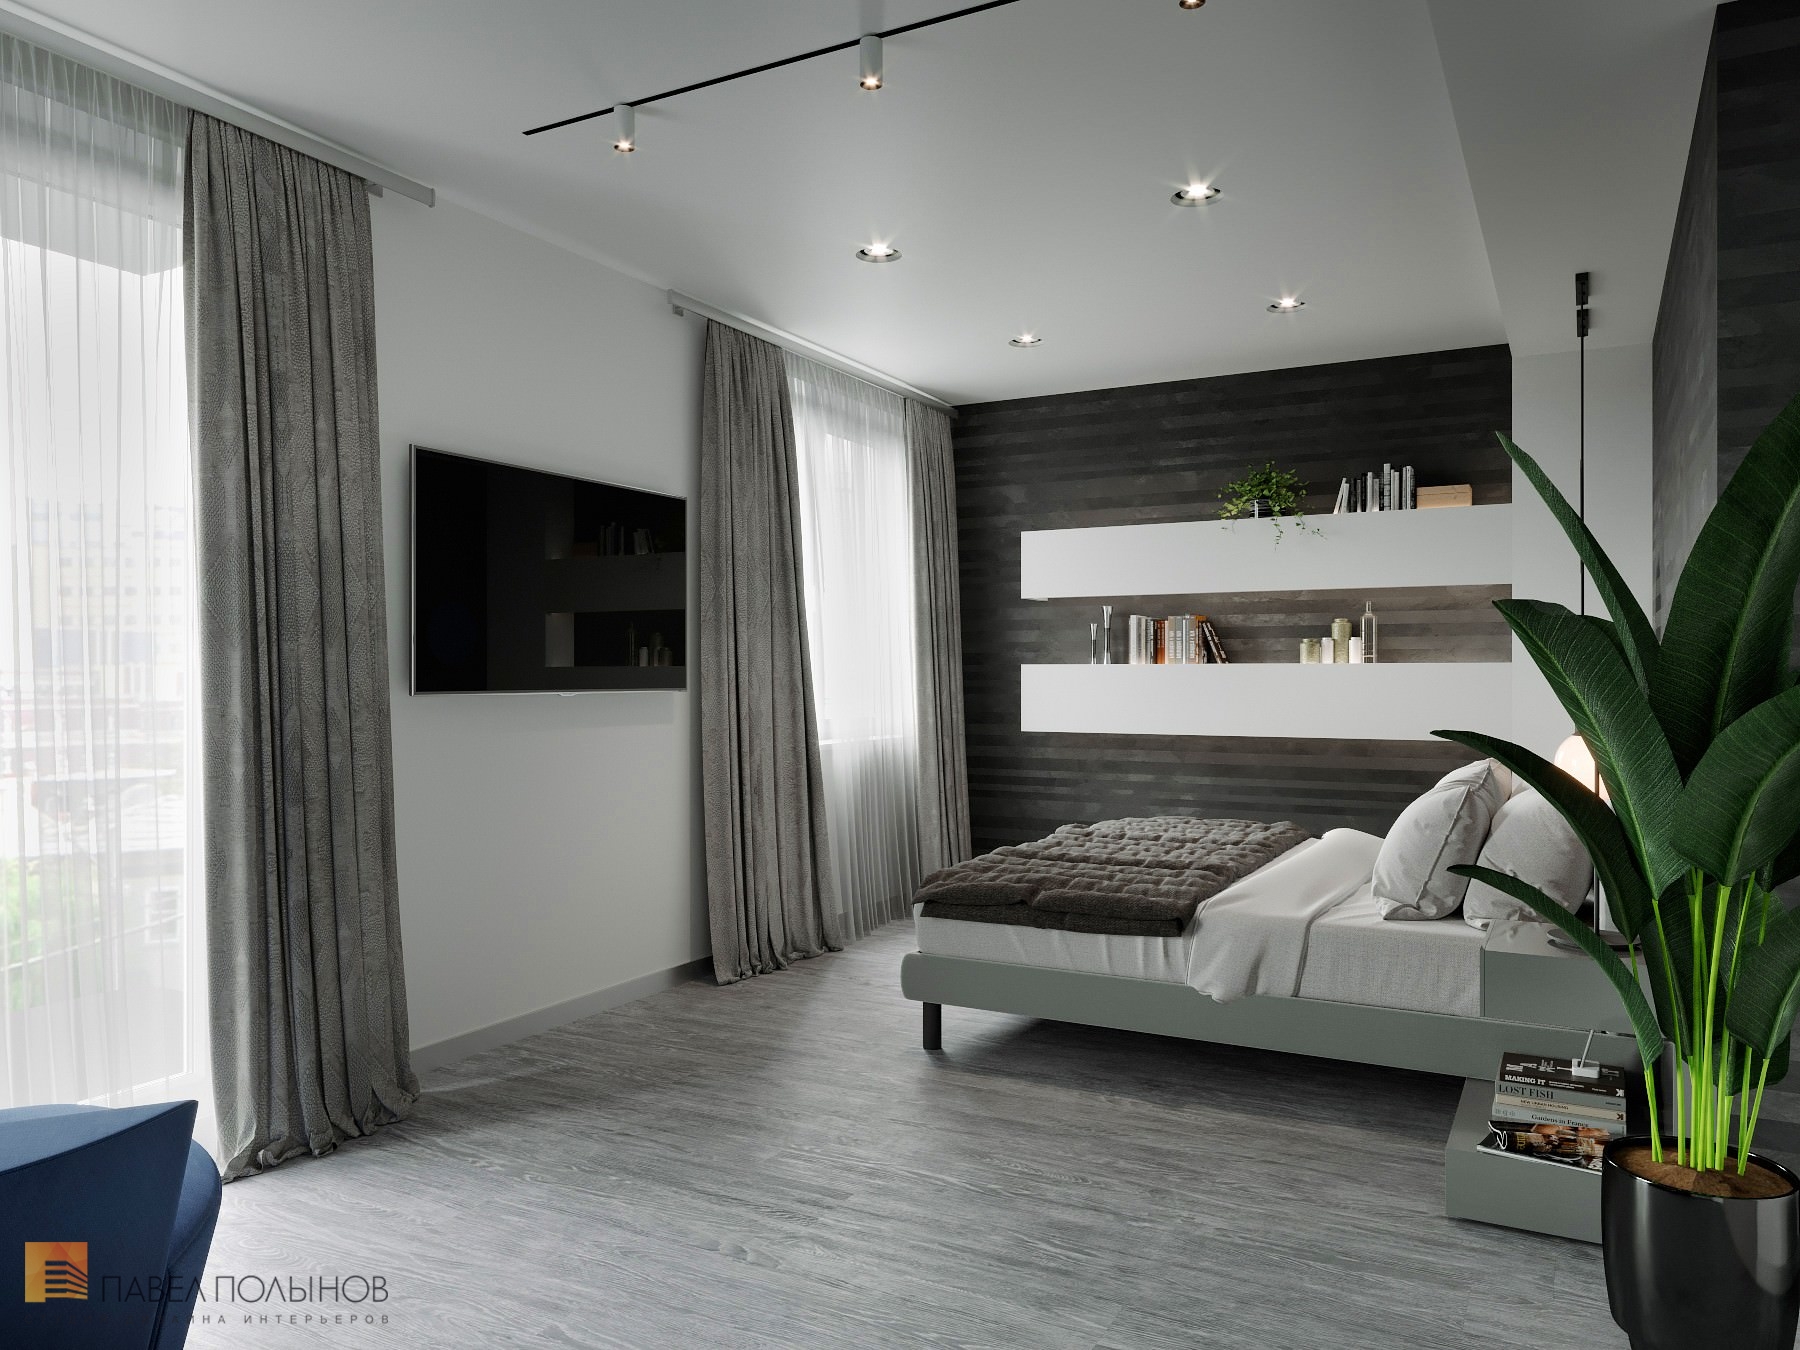 Фото спальня из проекта «Дизайн интерьер квартиры в ЖК «Кремлевские звезды», современный стиль, 133 кв.м.»